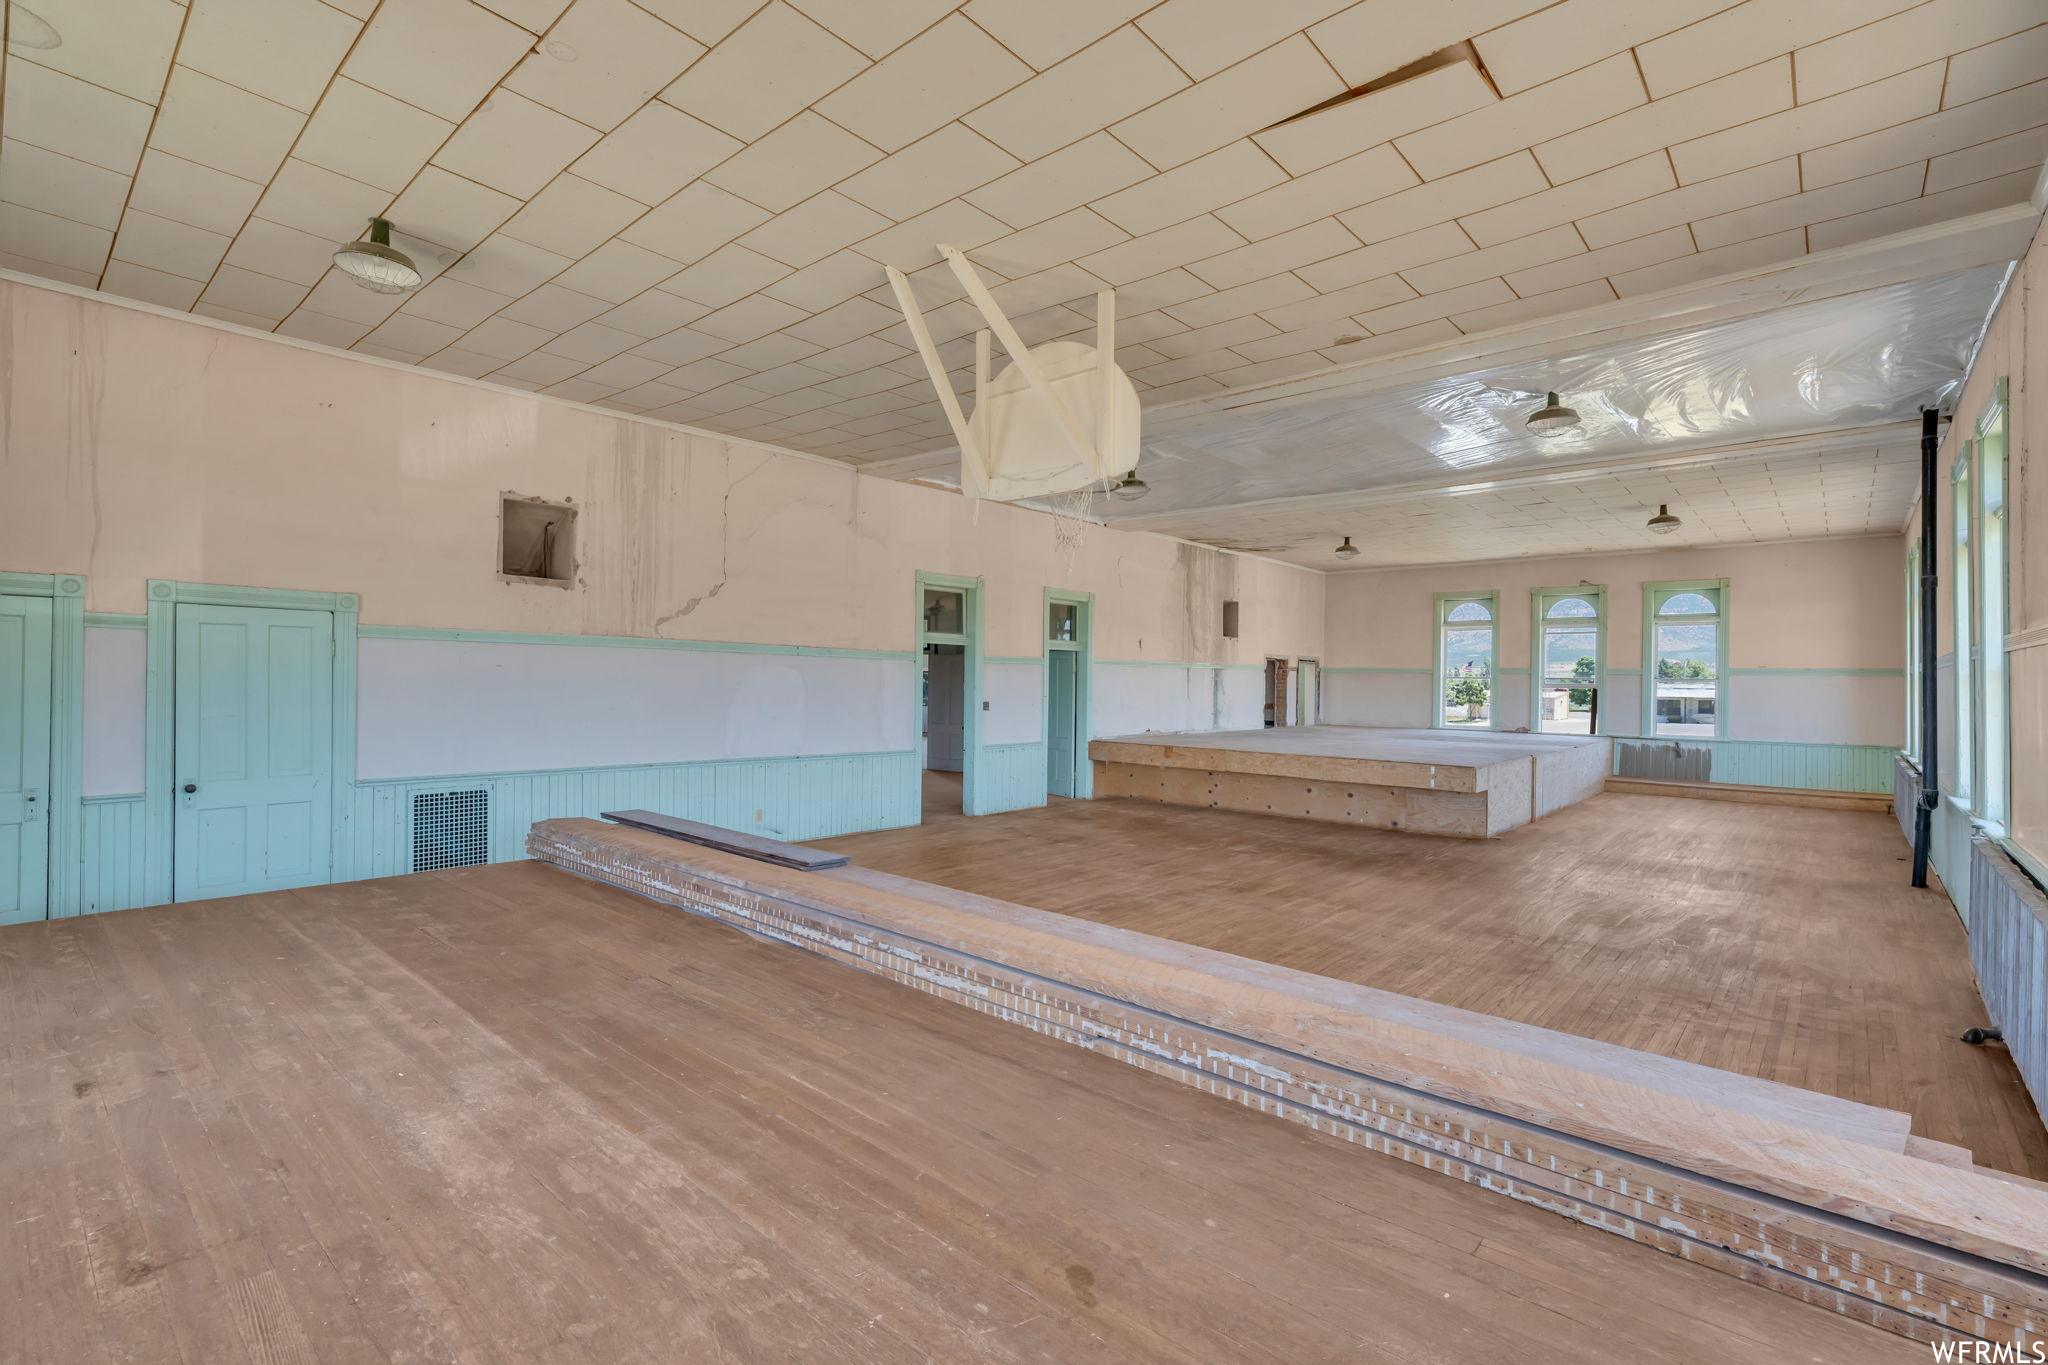 Gymnasium featuring light hardwood flooring